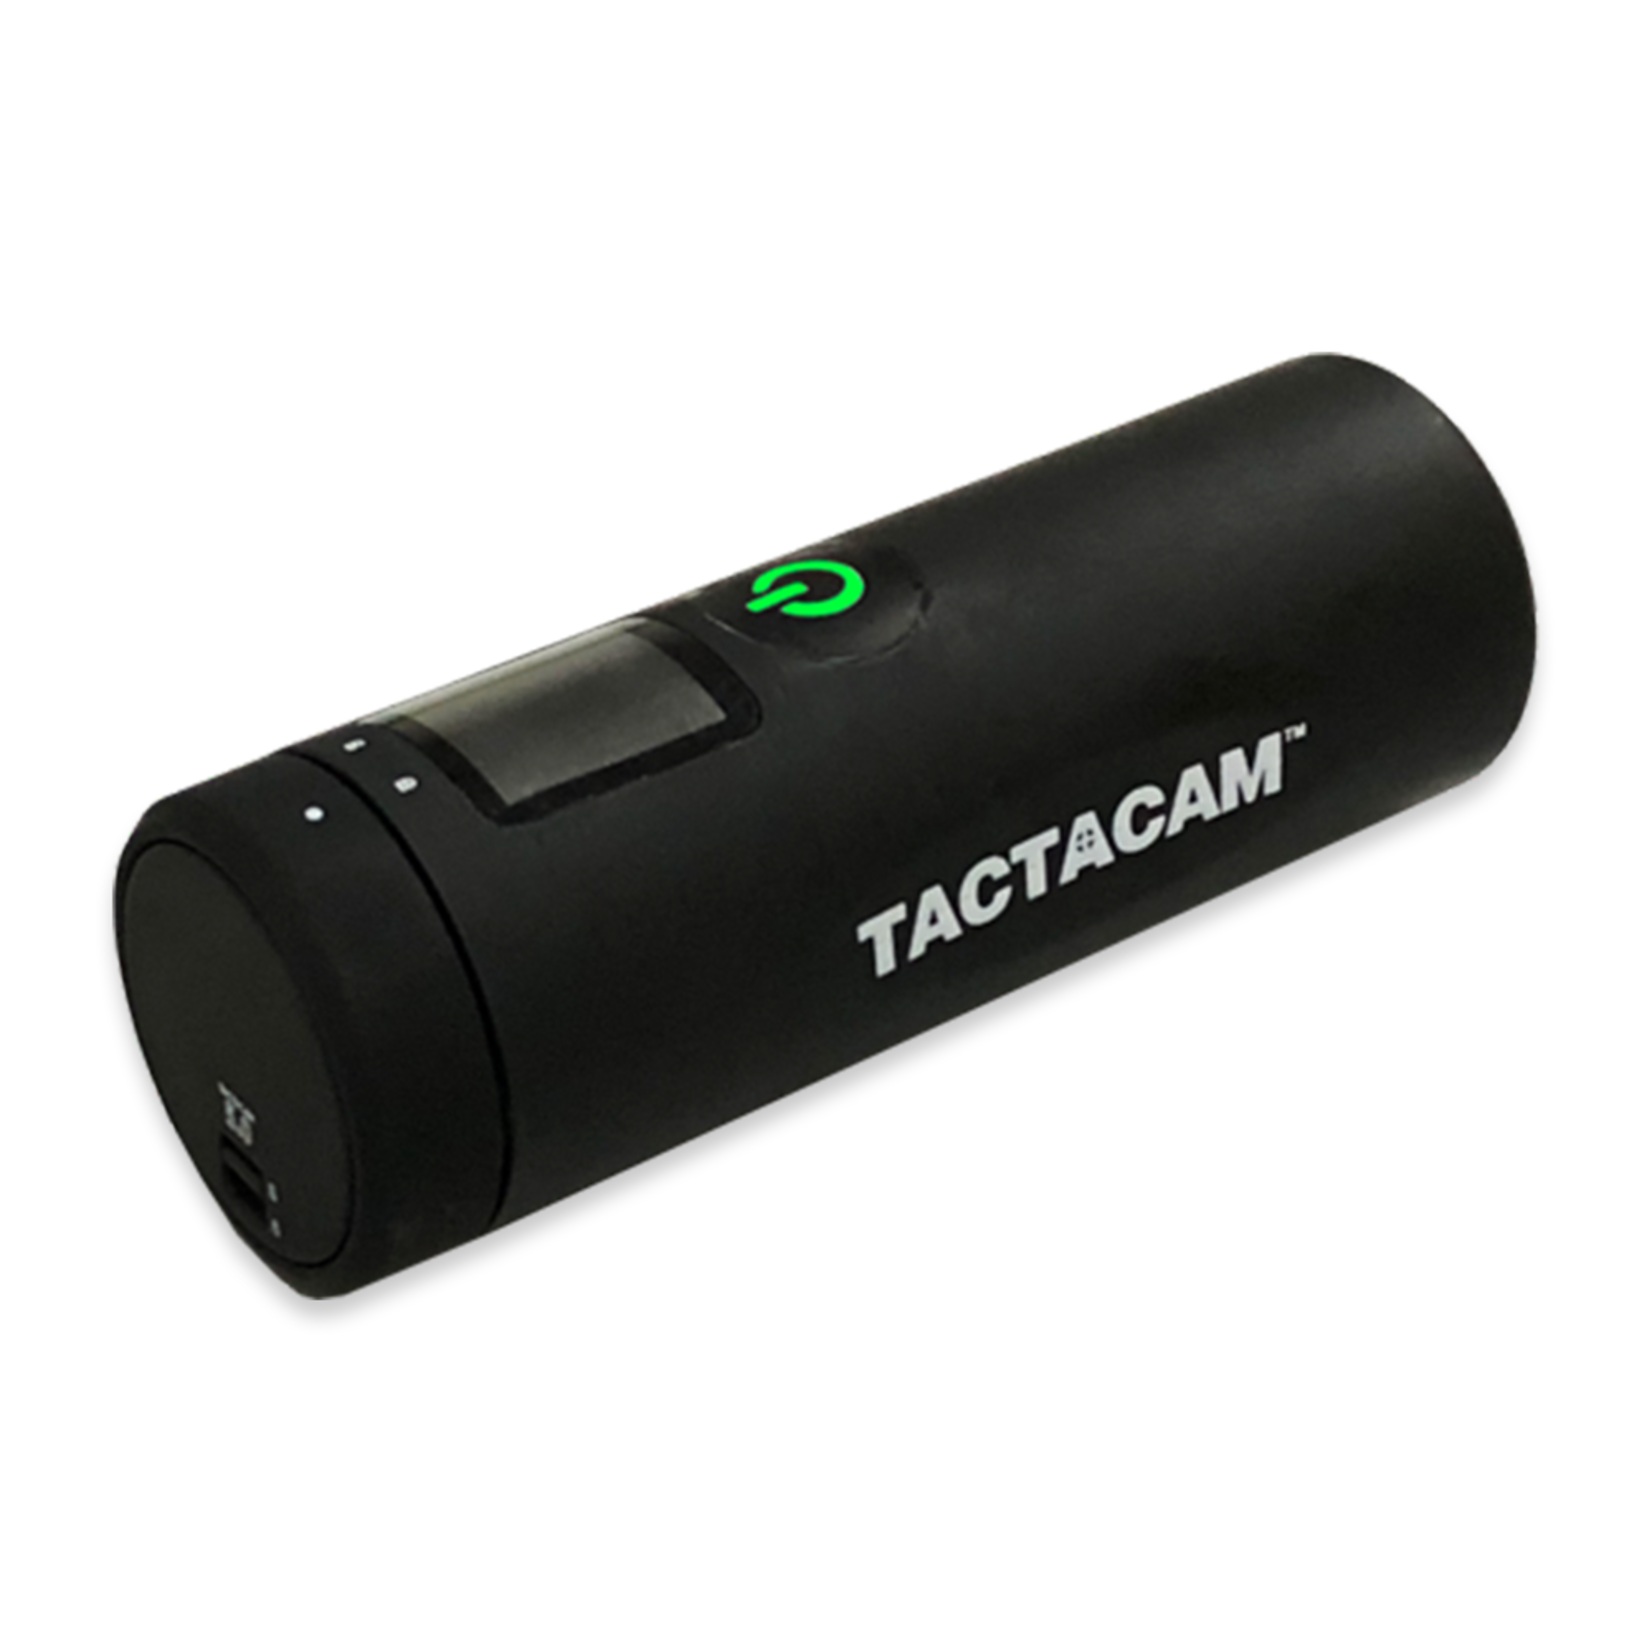 Tactacam Tactacam Remote Control